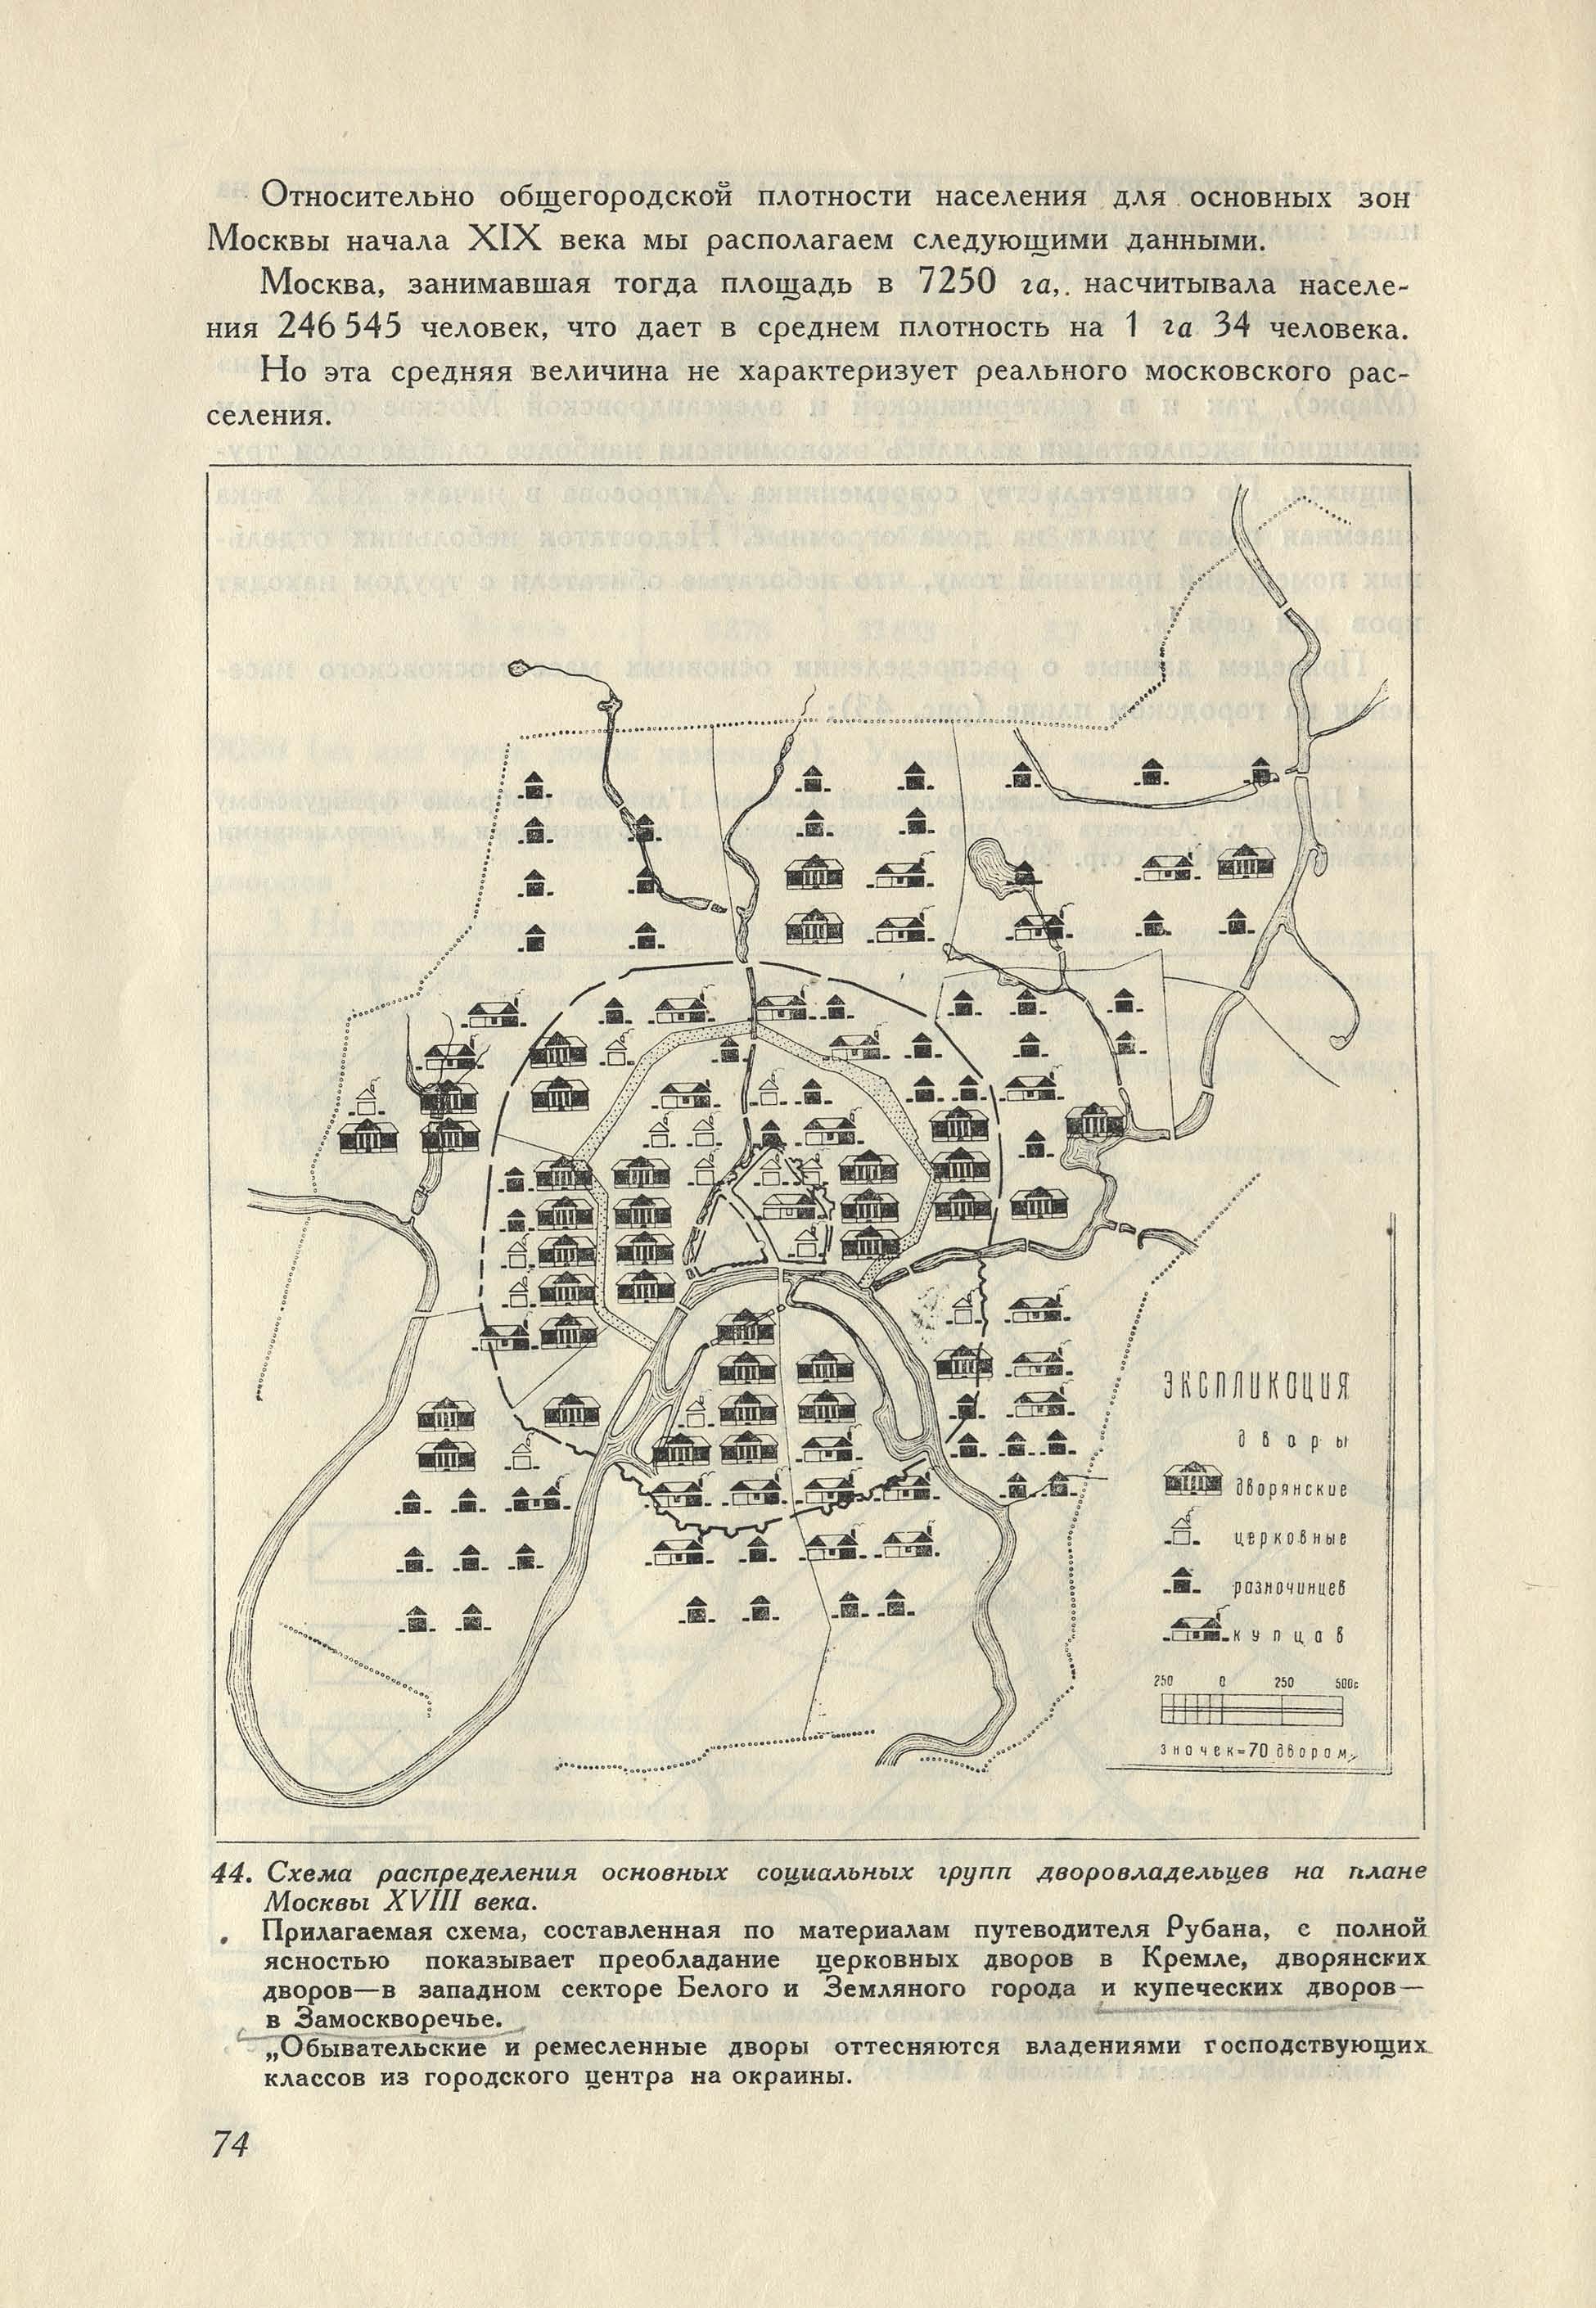 Схема распределения основных социальных групп дворовладельцев на плане Москвы 18 века